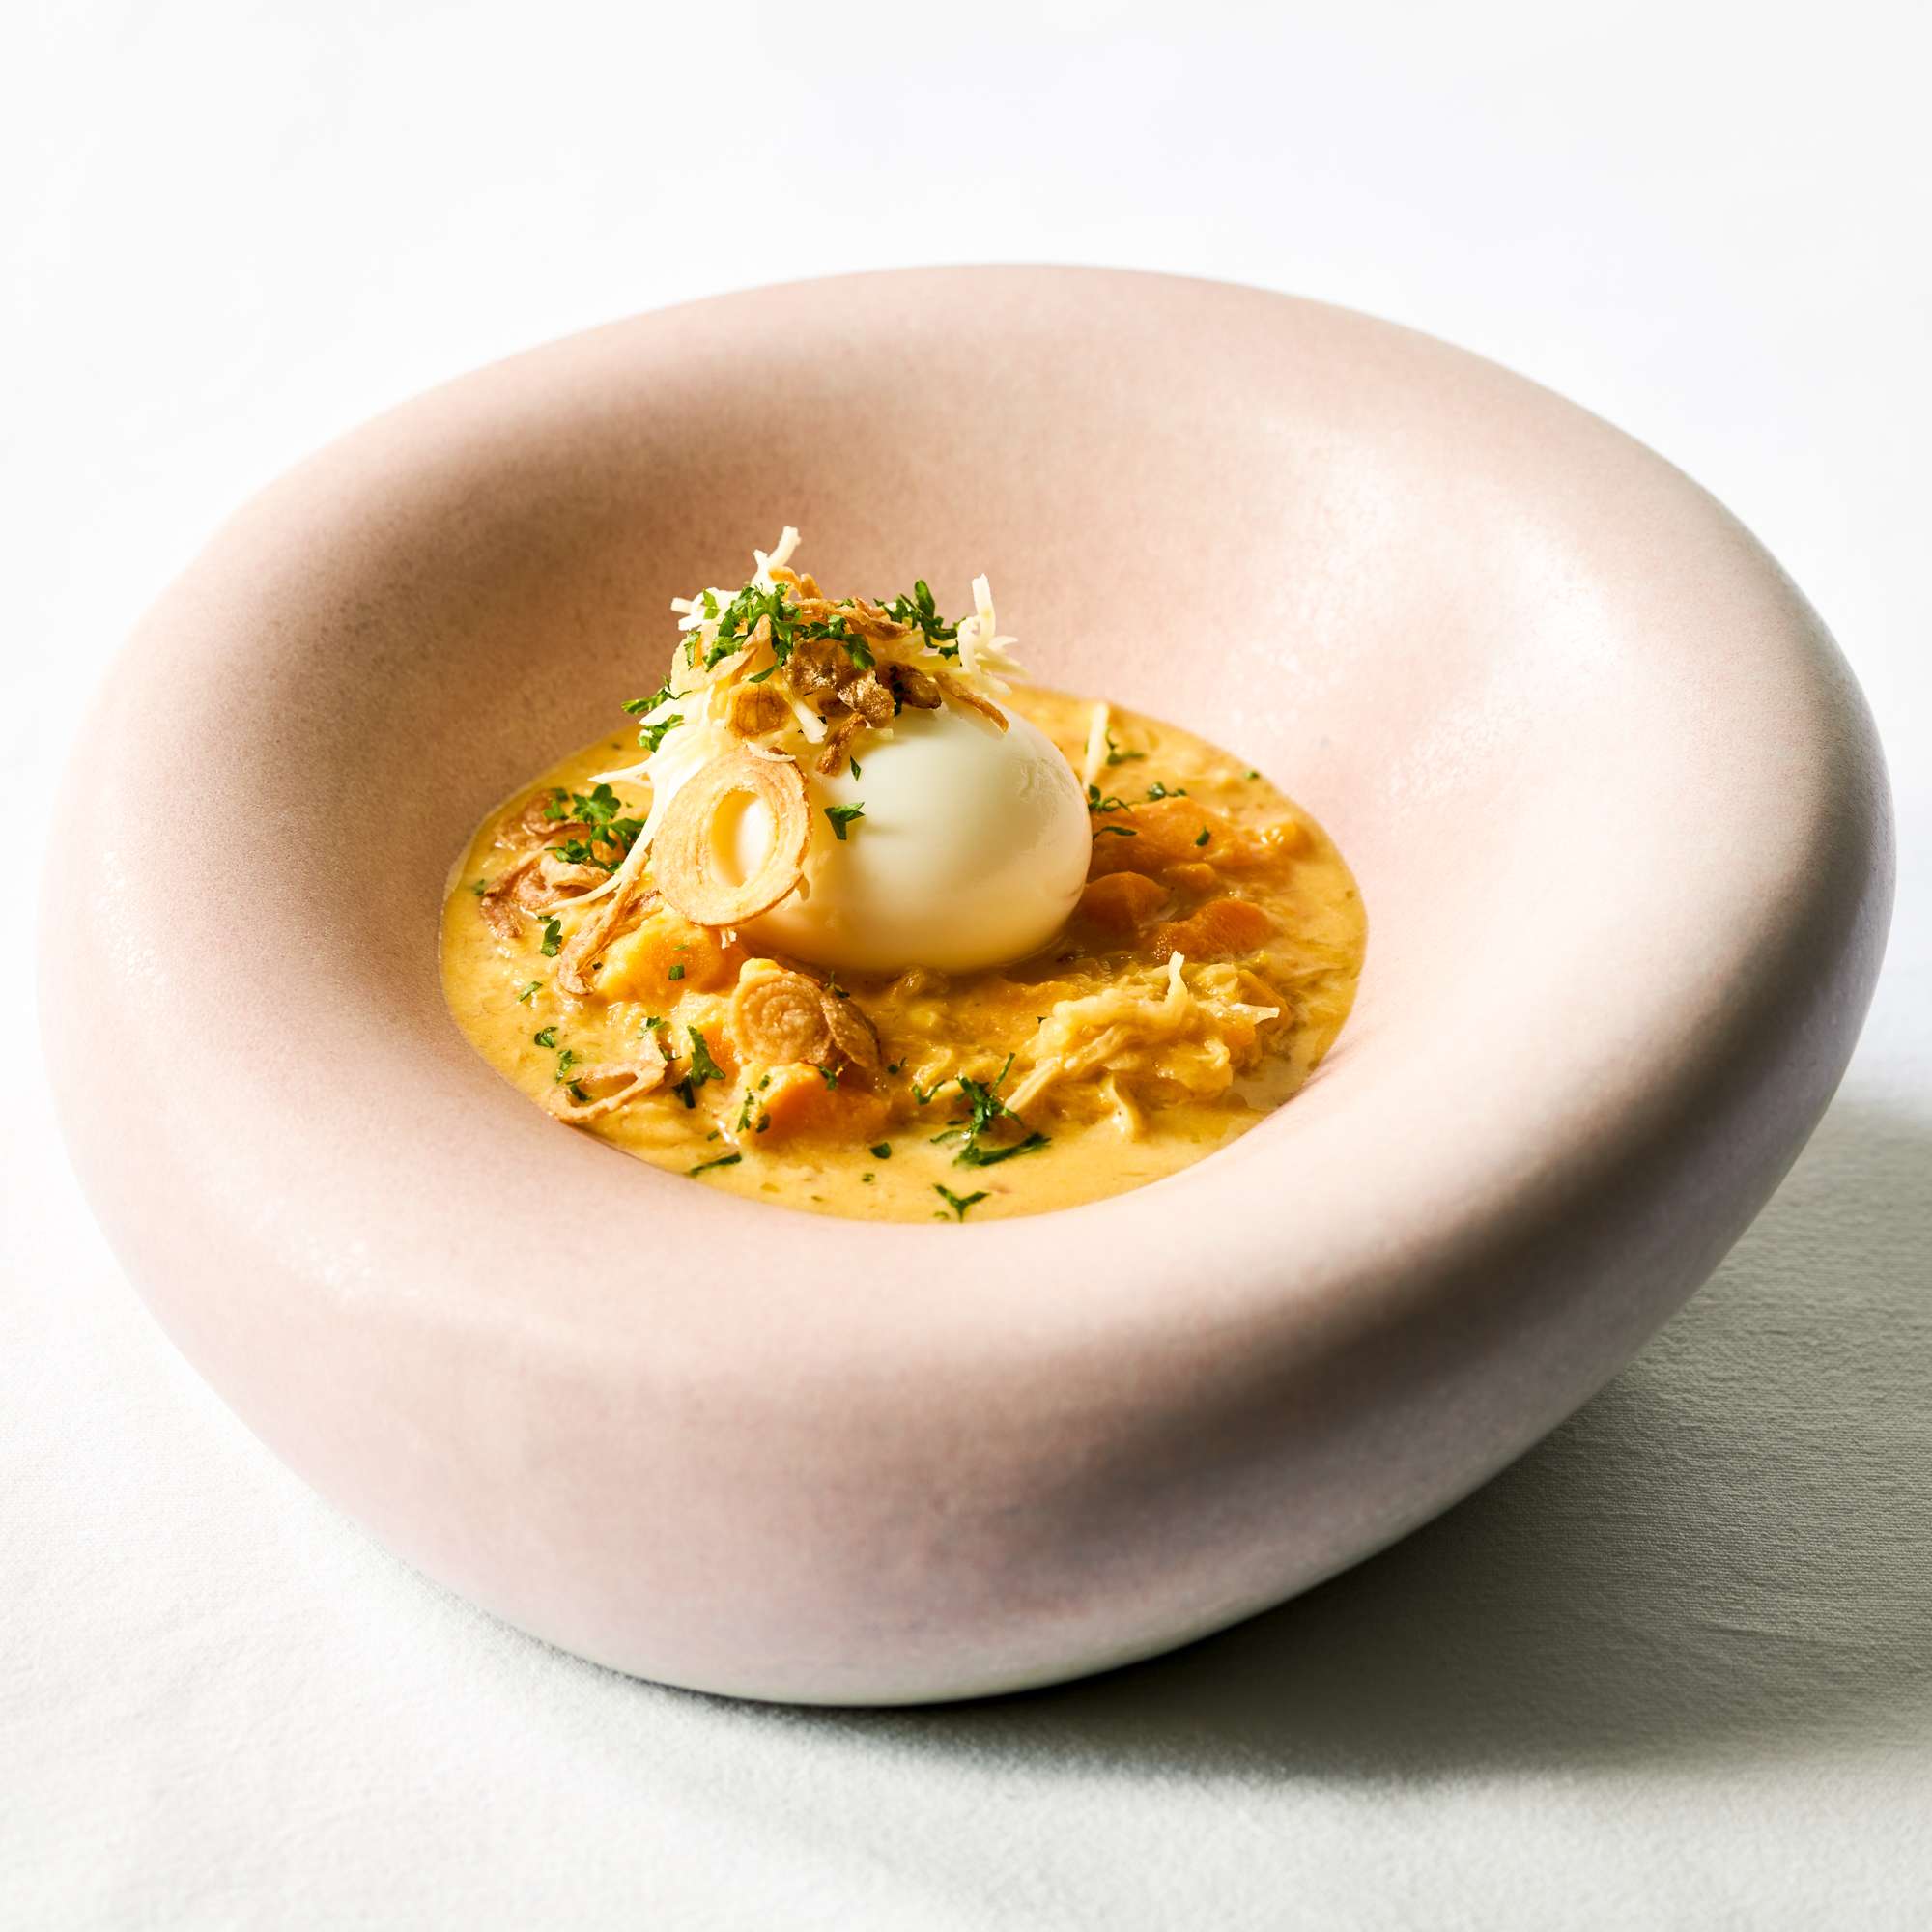 Süßkartoffel-Sauerkraut-Suppe mit Meerrettich und wachsweichem Ei